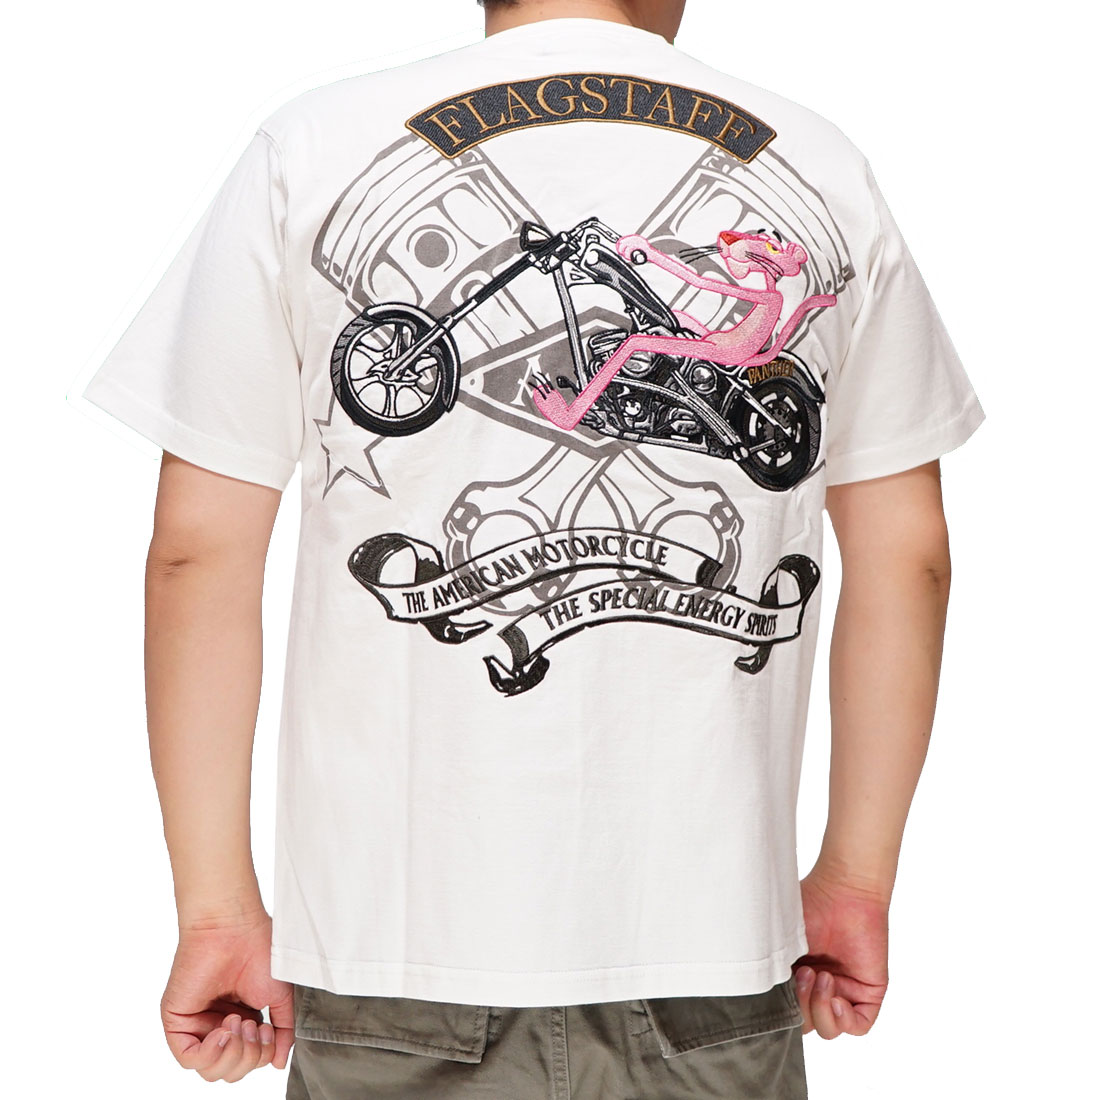 フラッグスタッフ FLAGSTAFF ピンクパンサー Tシャツ コラボ 半袖 メンズ 422072